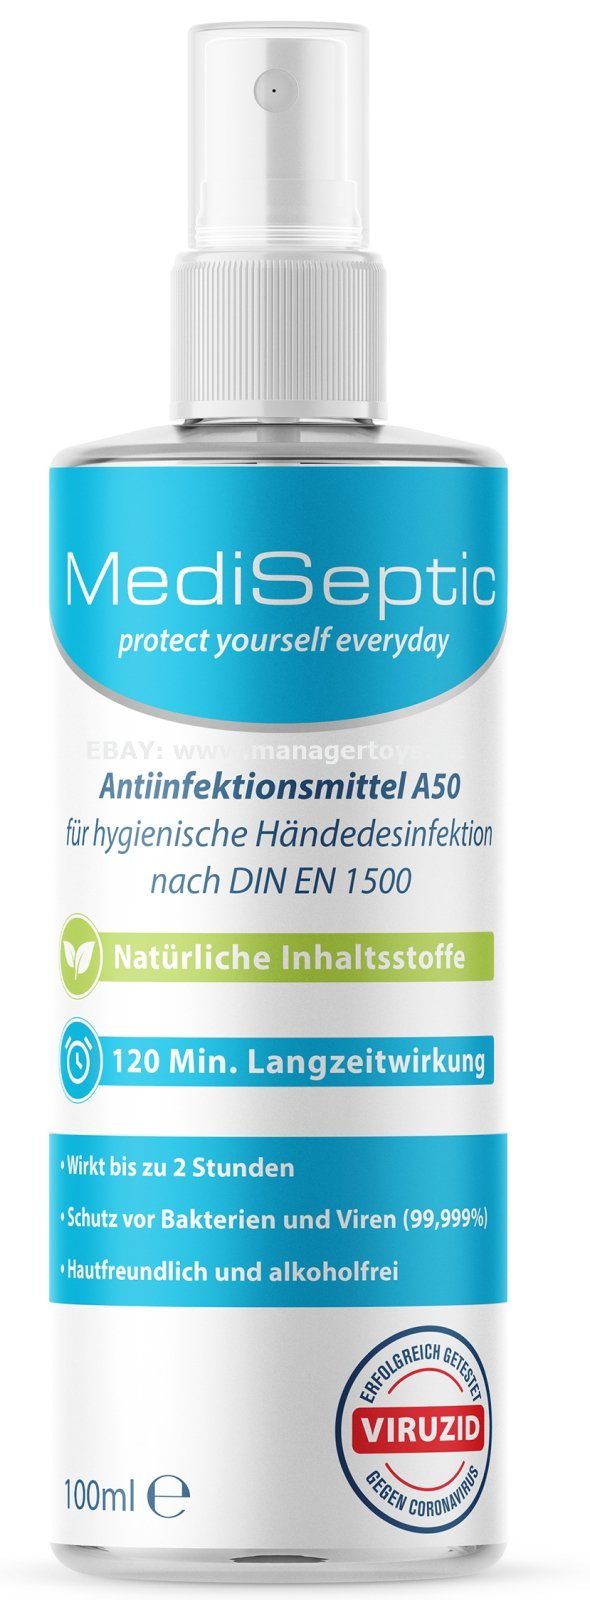 MediSeptic Handcreme MediSeptic Antiinfektionsmittel Desinfektion Anti-Infektion zur h Hände ml, 100 Desinfektion zusätzlich Schutz 2 Hand 99,9